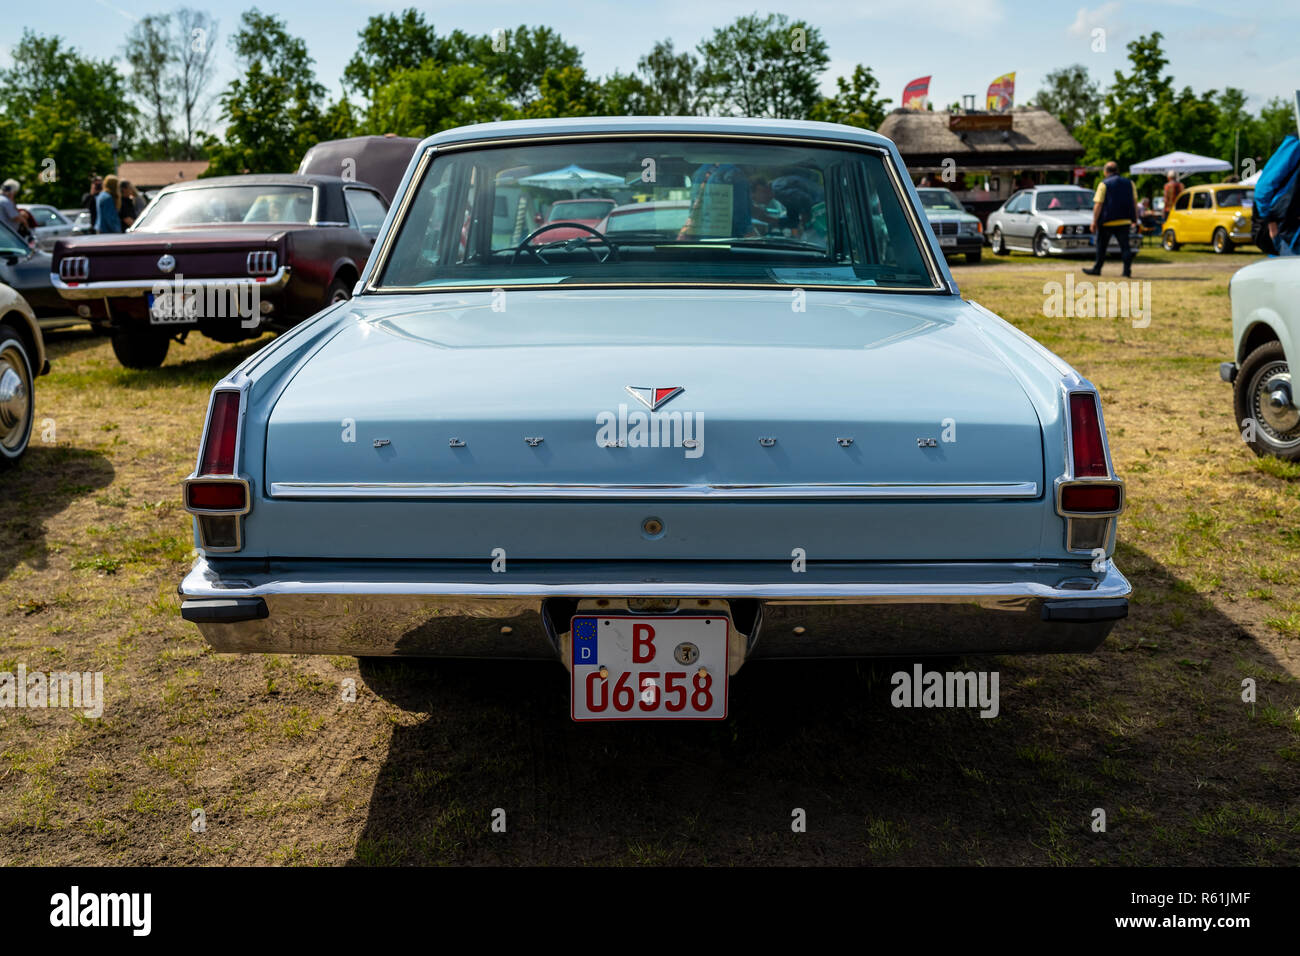 PAAREN IM GLIEN, ALLEMAGNE - le 19 mai 2018 : voiture compacte Plymouth Valiant 200, 1966. Vue arrière. Exposition 'Die Oldtimer Show 2018'. Banque D'Images